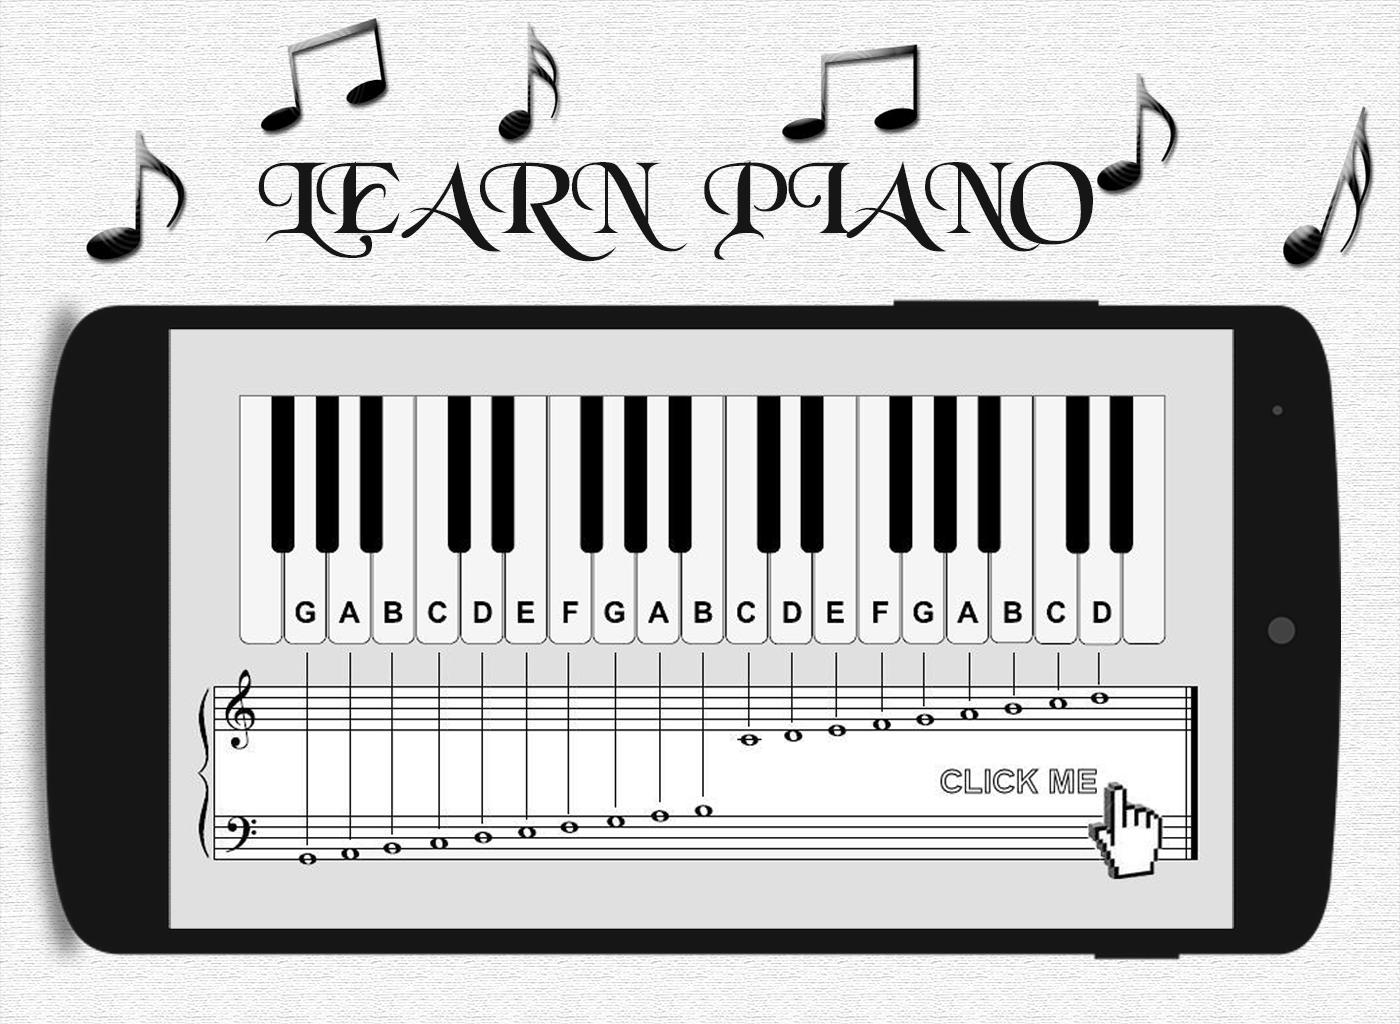 Piano play song